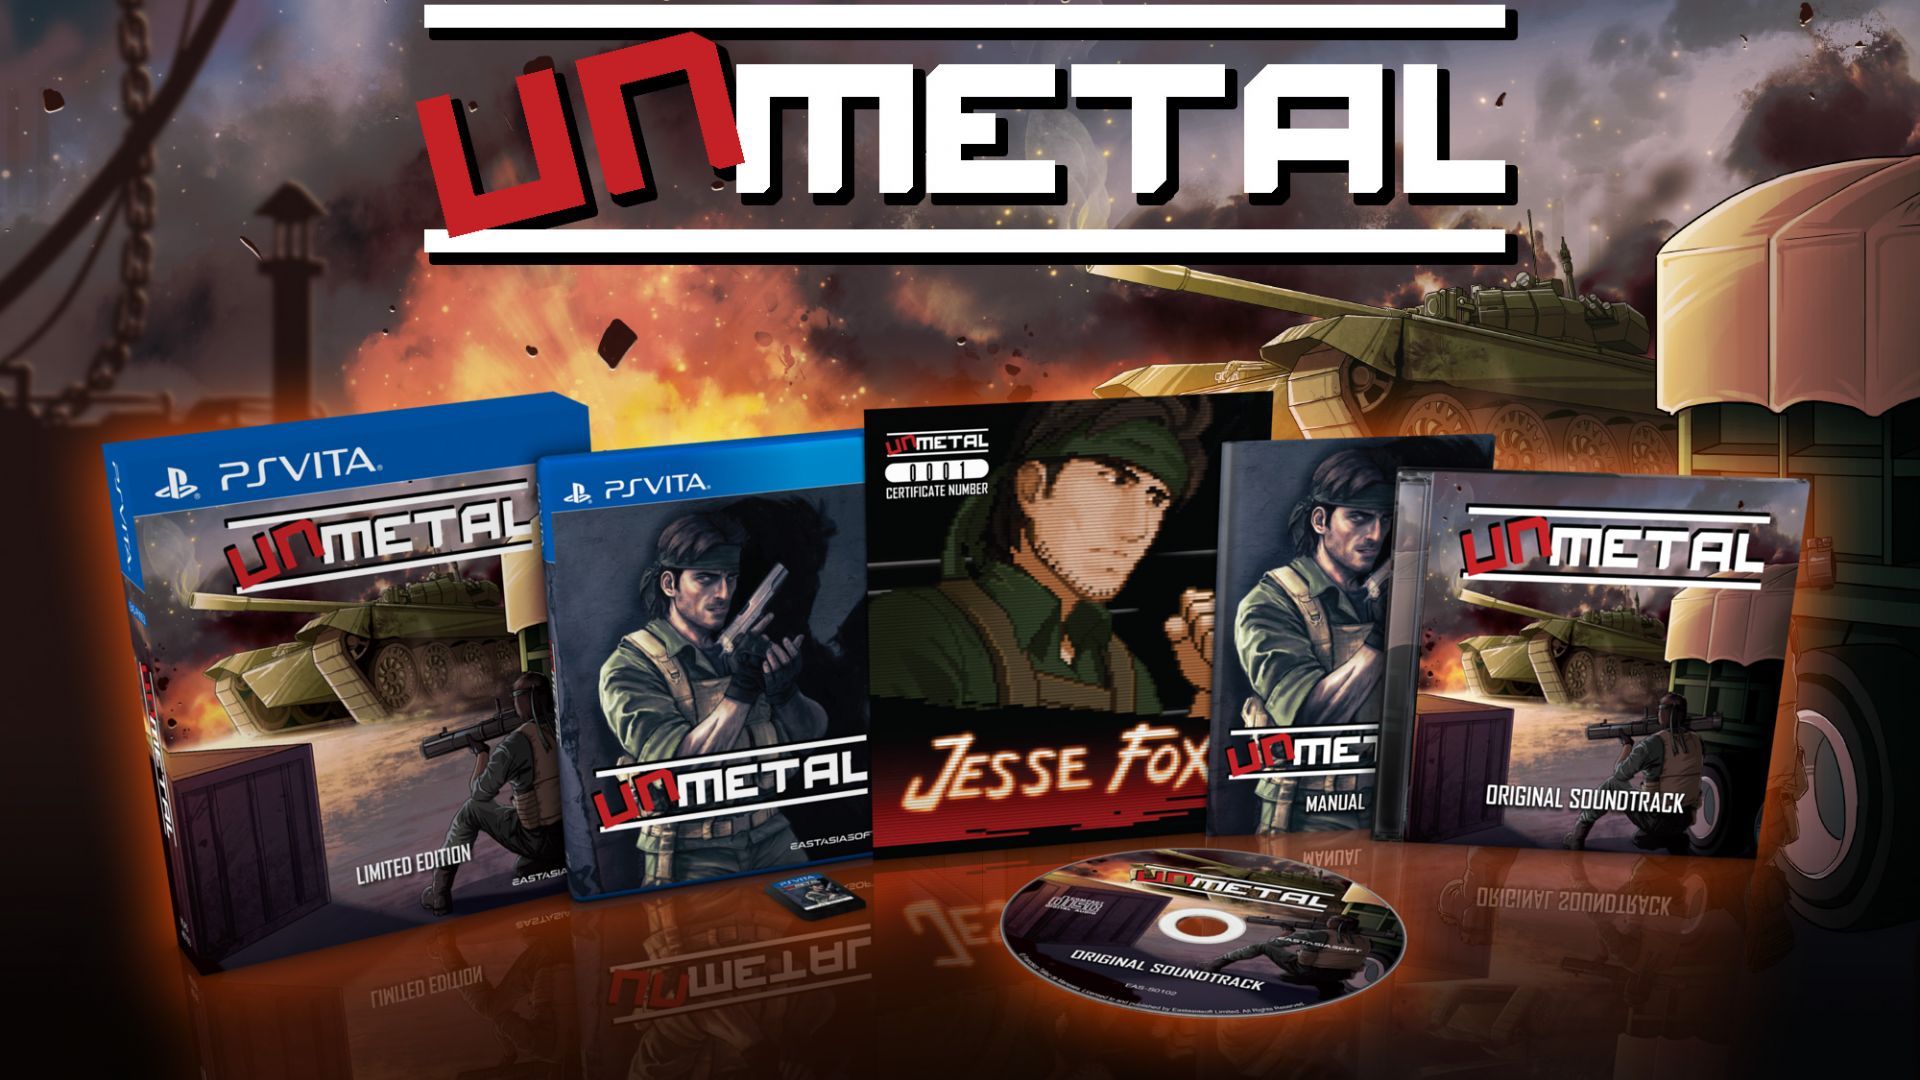 UnMetal, le jeu qui parodie Metal Gear, est disponible en édition physique limitée sur PS Vita - Planète Vita